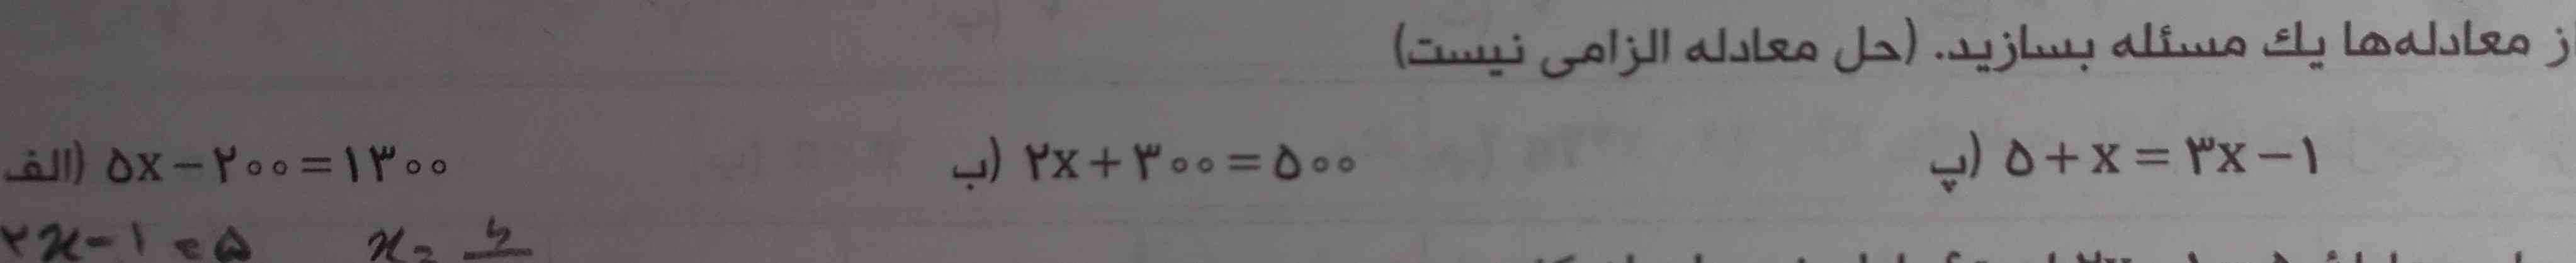 برای این معادلات (مسئله) بنویسید لطفا 
تاج میدم 